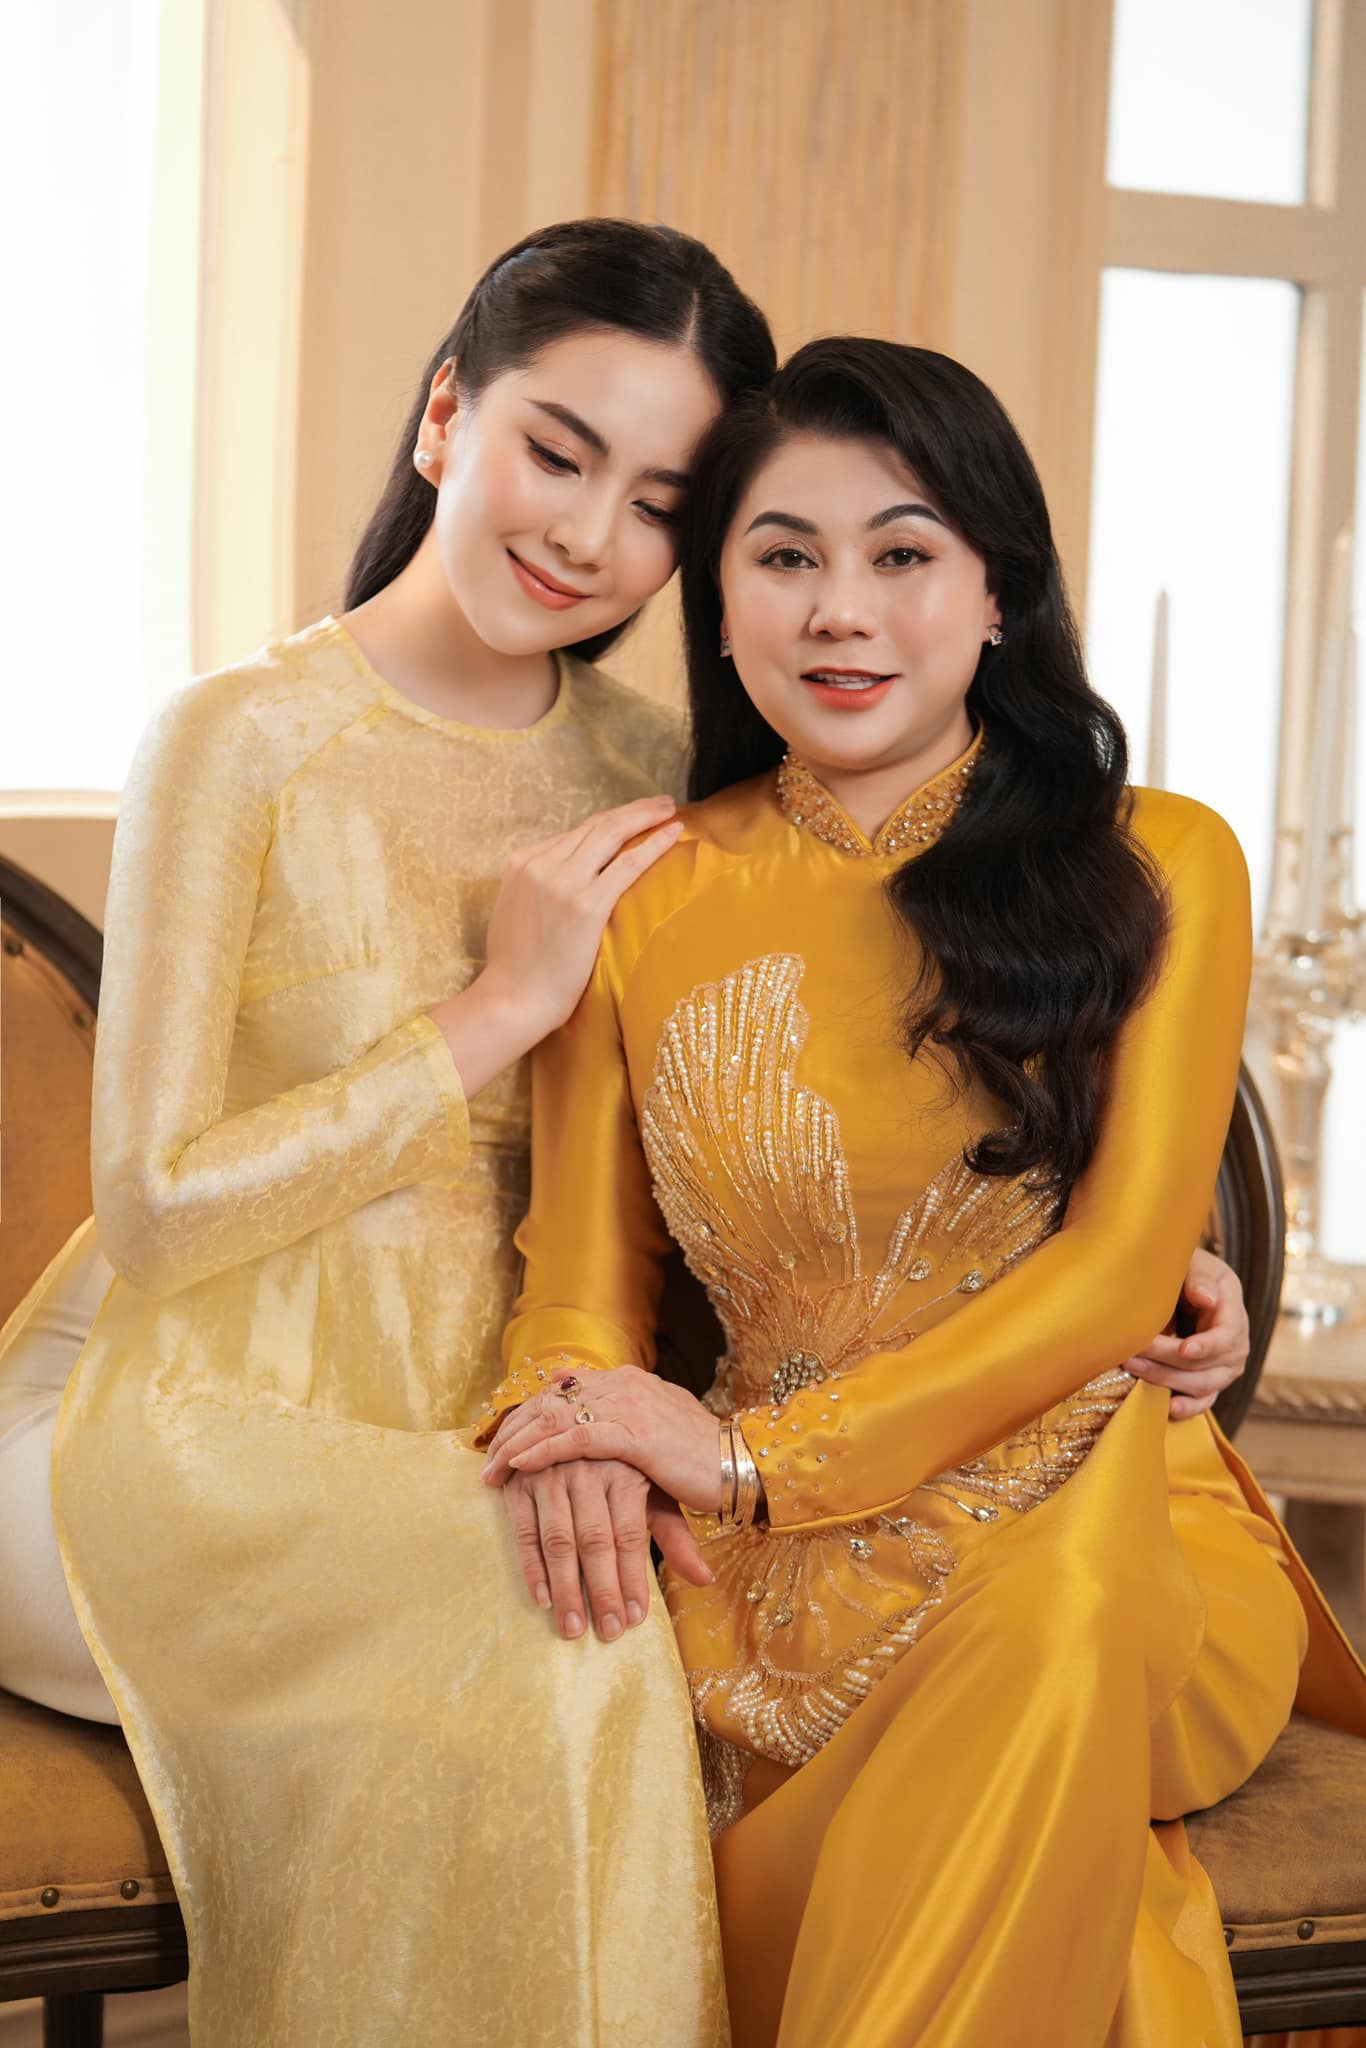 Sao Việt ngày 8/3: Tự Long làm thơ tặng vợ, mẹ con nghệ sĩ Thanh Thanh Hiền tự tạo hạnh phúc cho nhau - Ảnh 4.